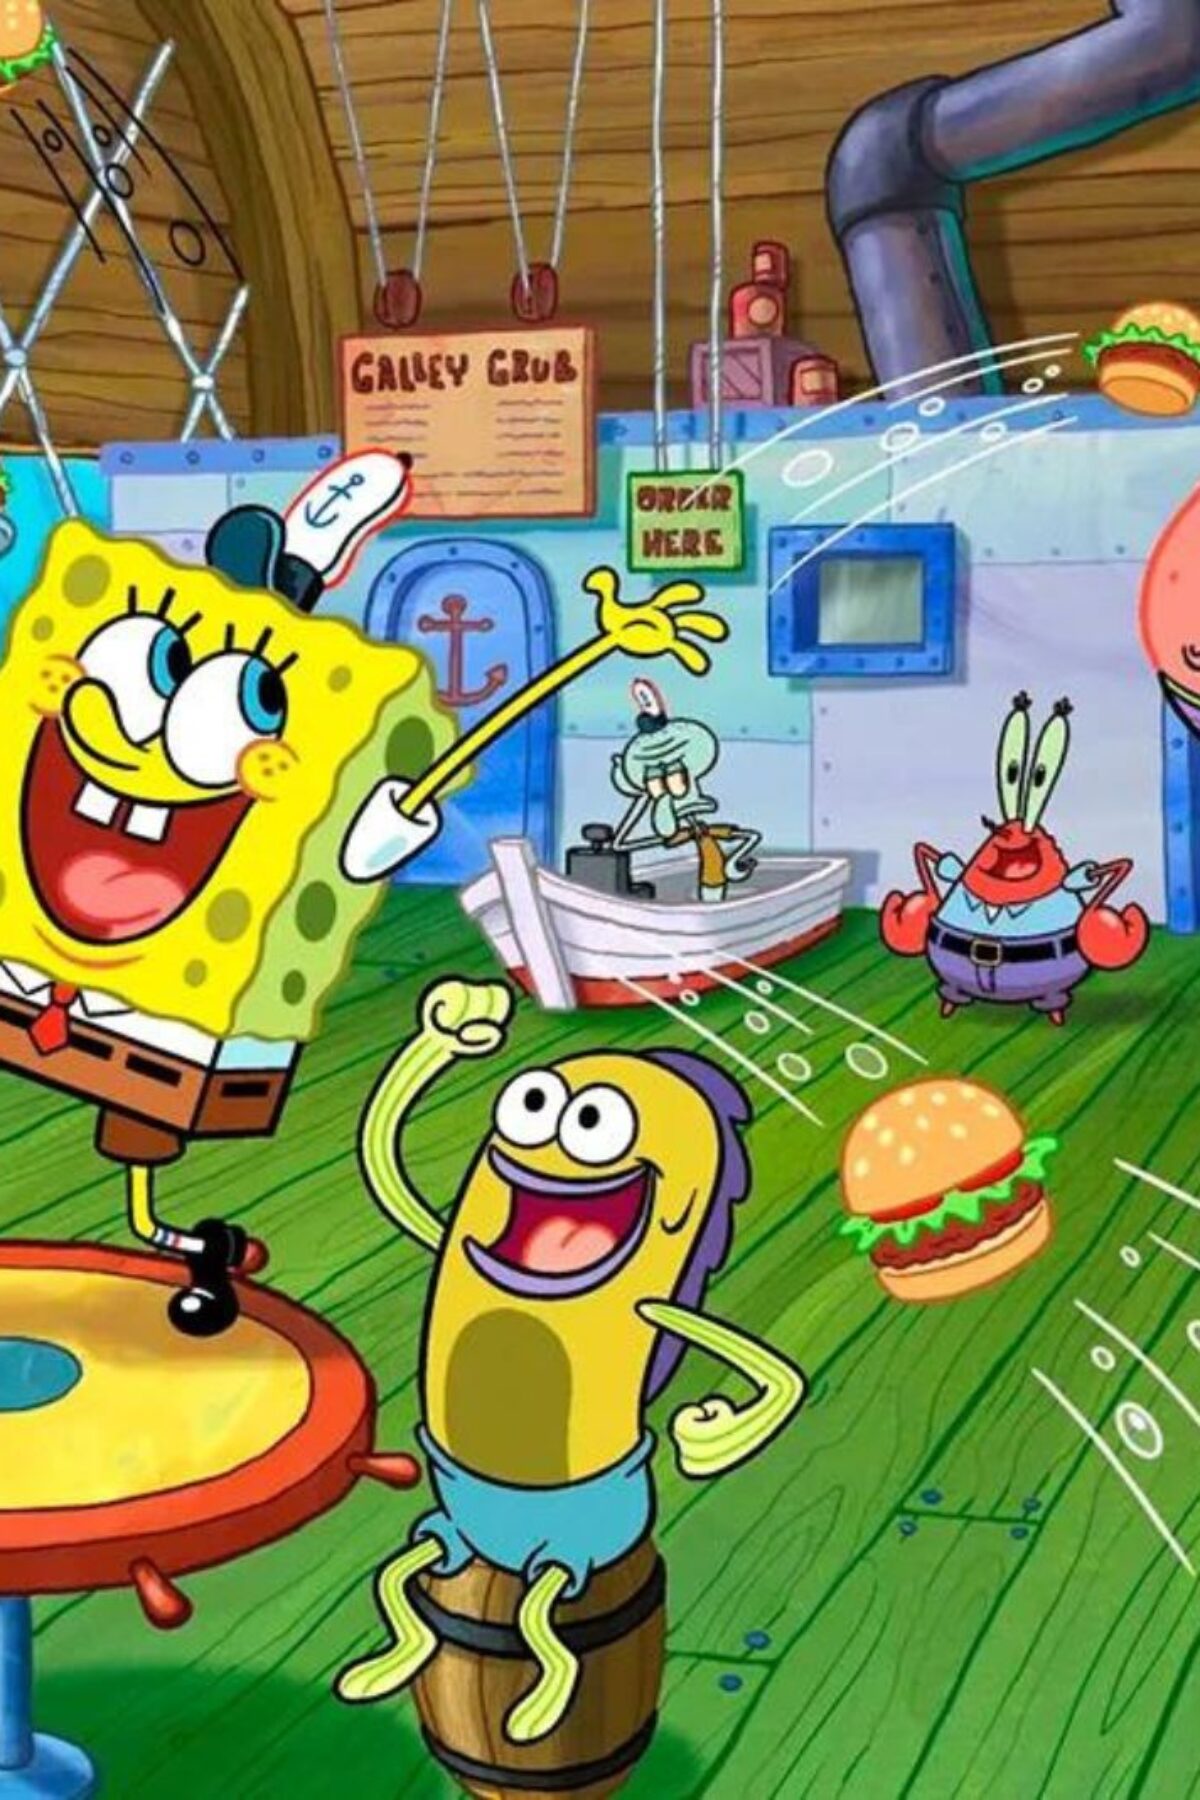 Spongebob Squarepants in Krusty Krab with friends